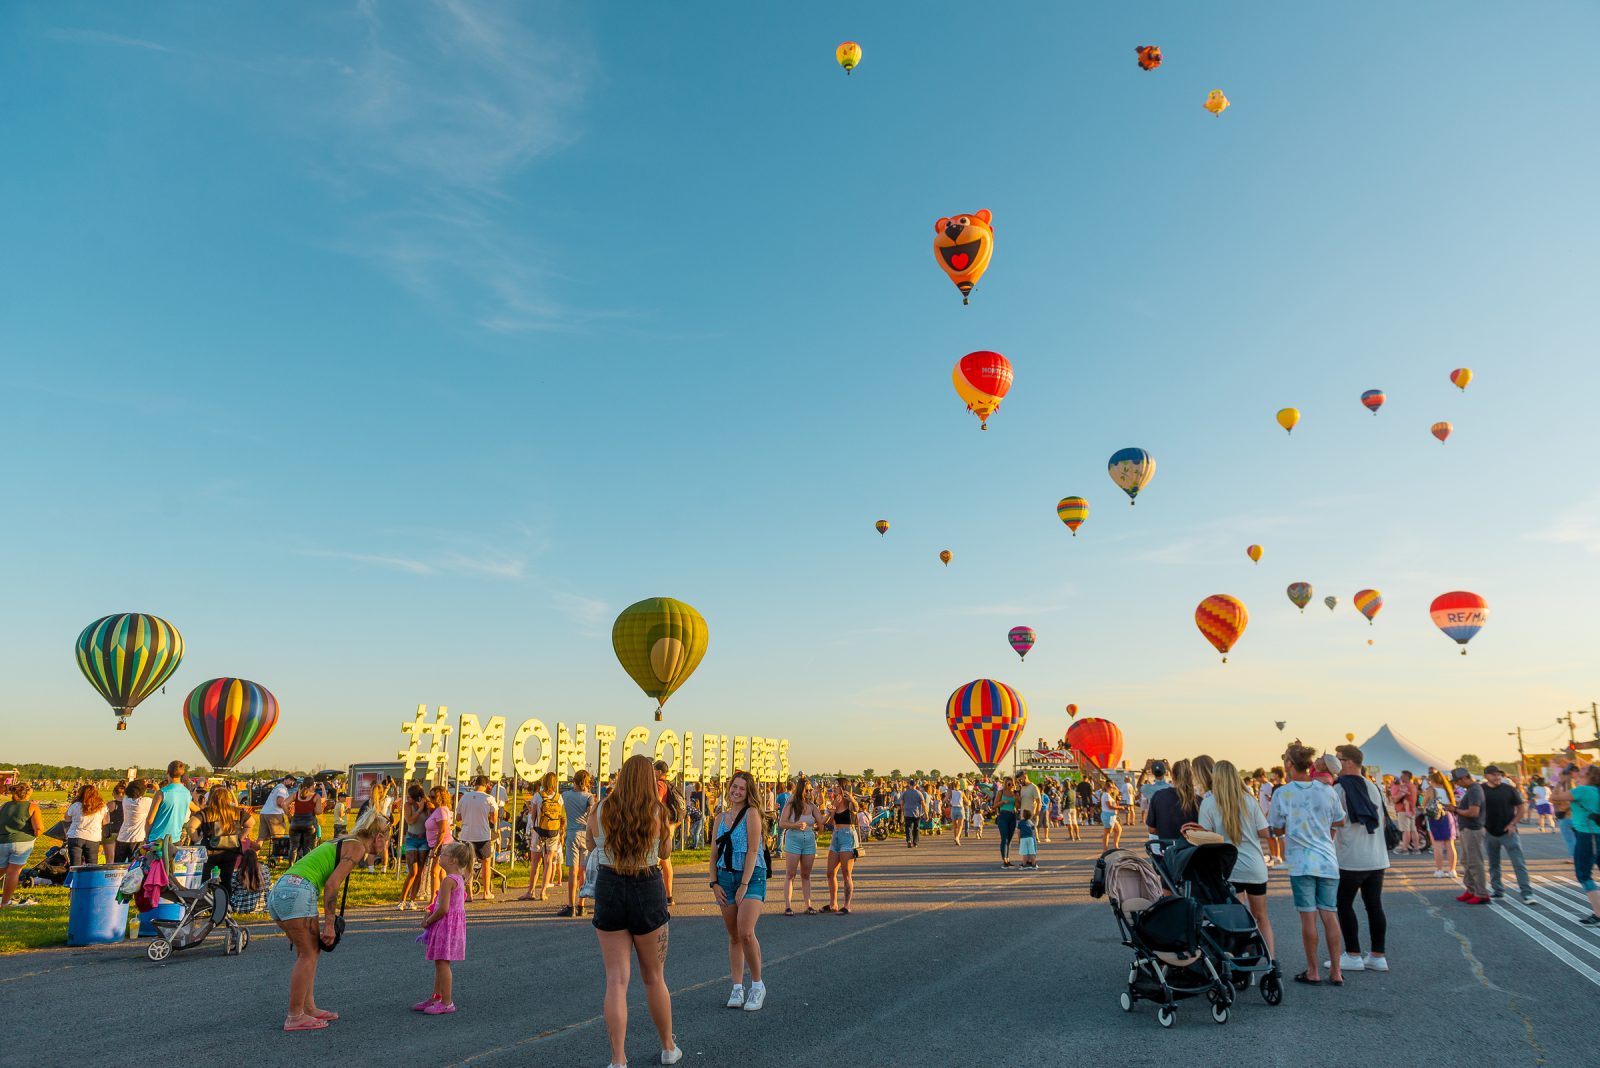 La Ville accorde 2 M$ à l’International de montgolfières pour payer les fournisseurs locaux